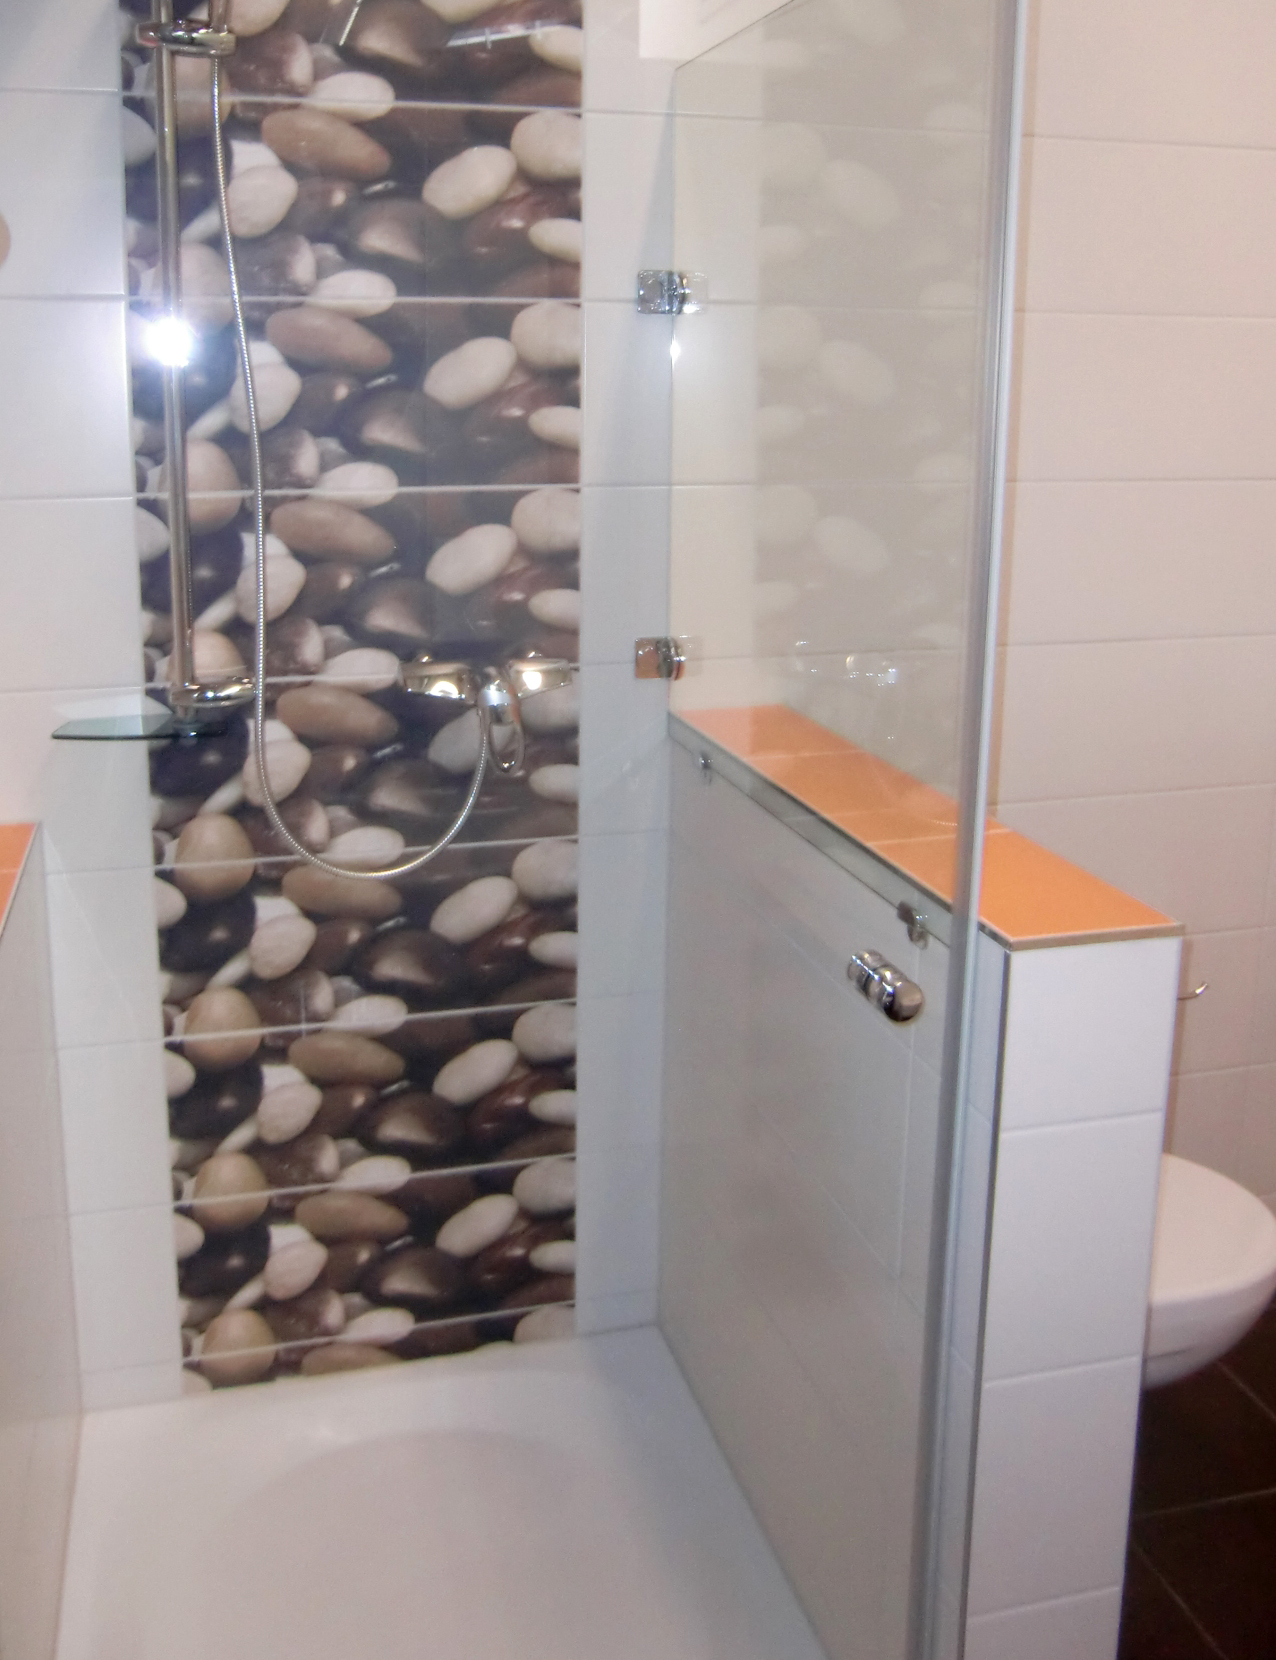 Modernes Badezimmer weiß gefliest, aufgelockert mit farbigen, orangen und schwarzen Fliesen, Duschkabine mit dekorativen Steinen